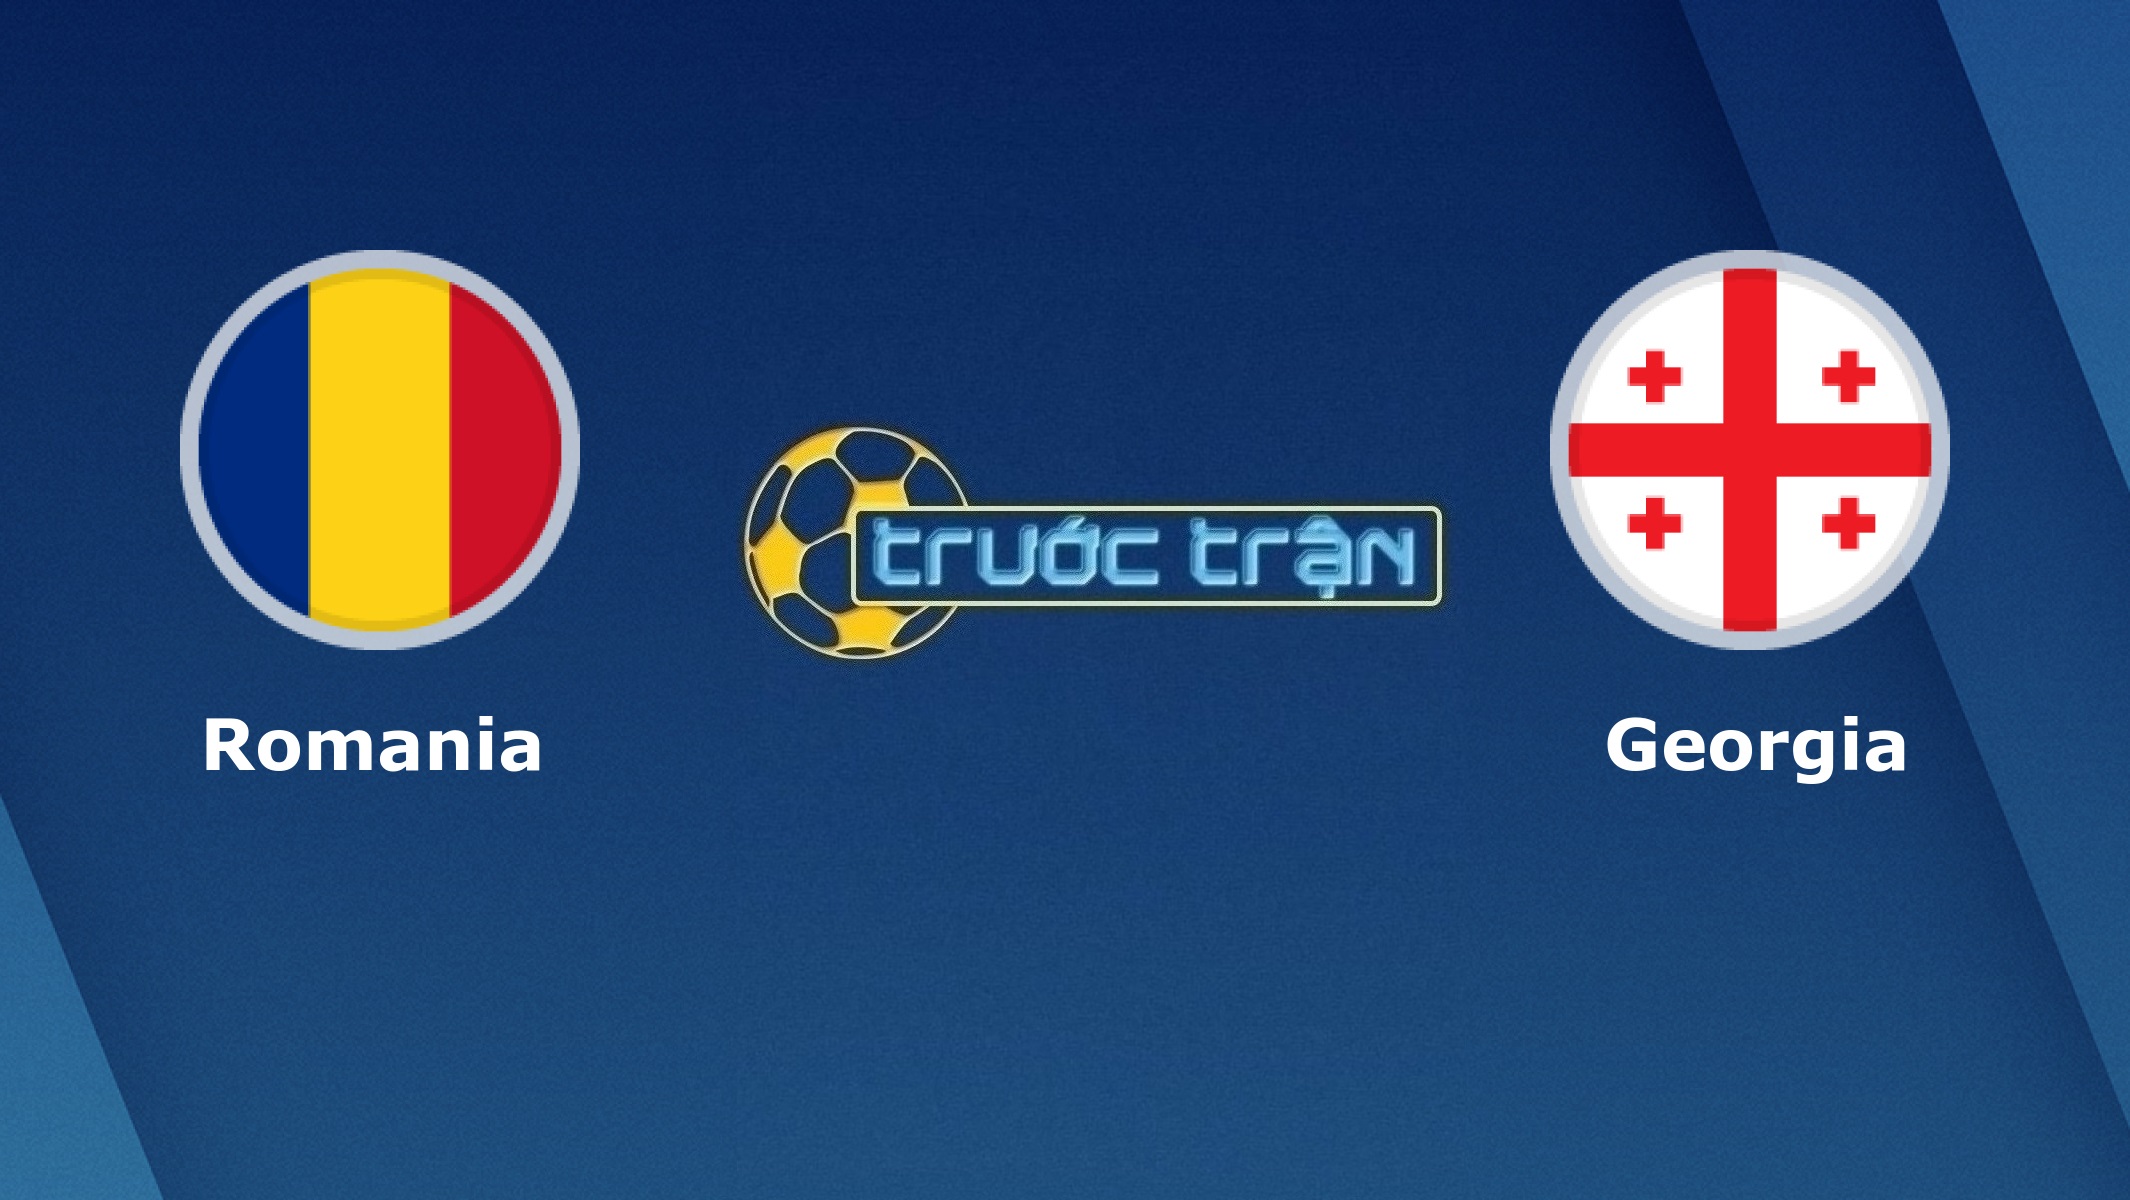 Romania vs Georgia – Tip kèo bóng đá hôm nay – 01h45 03/06/2021